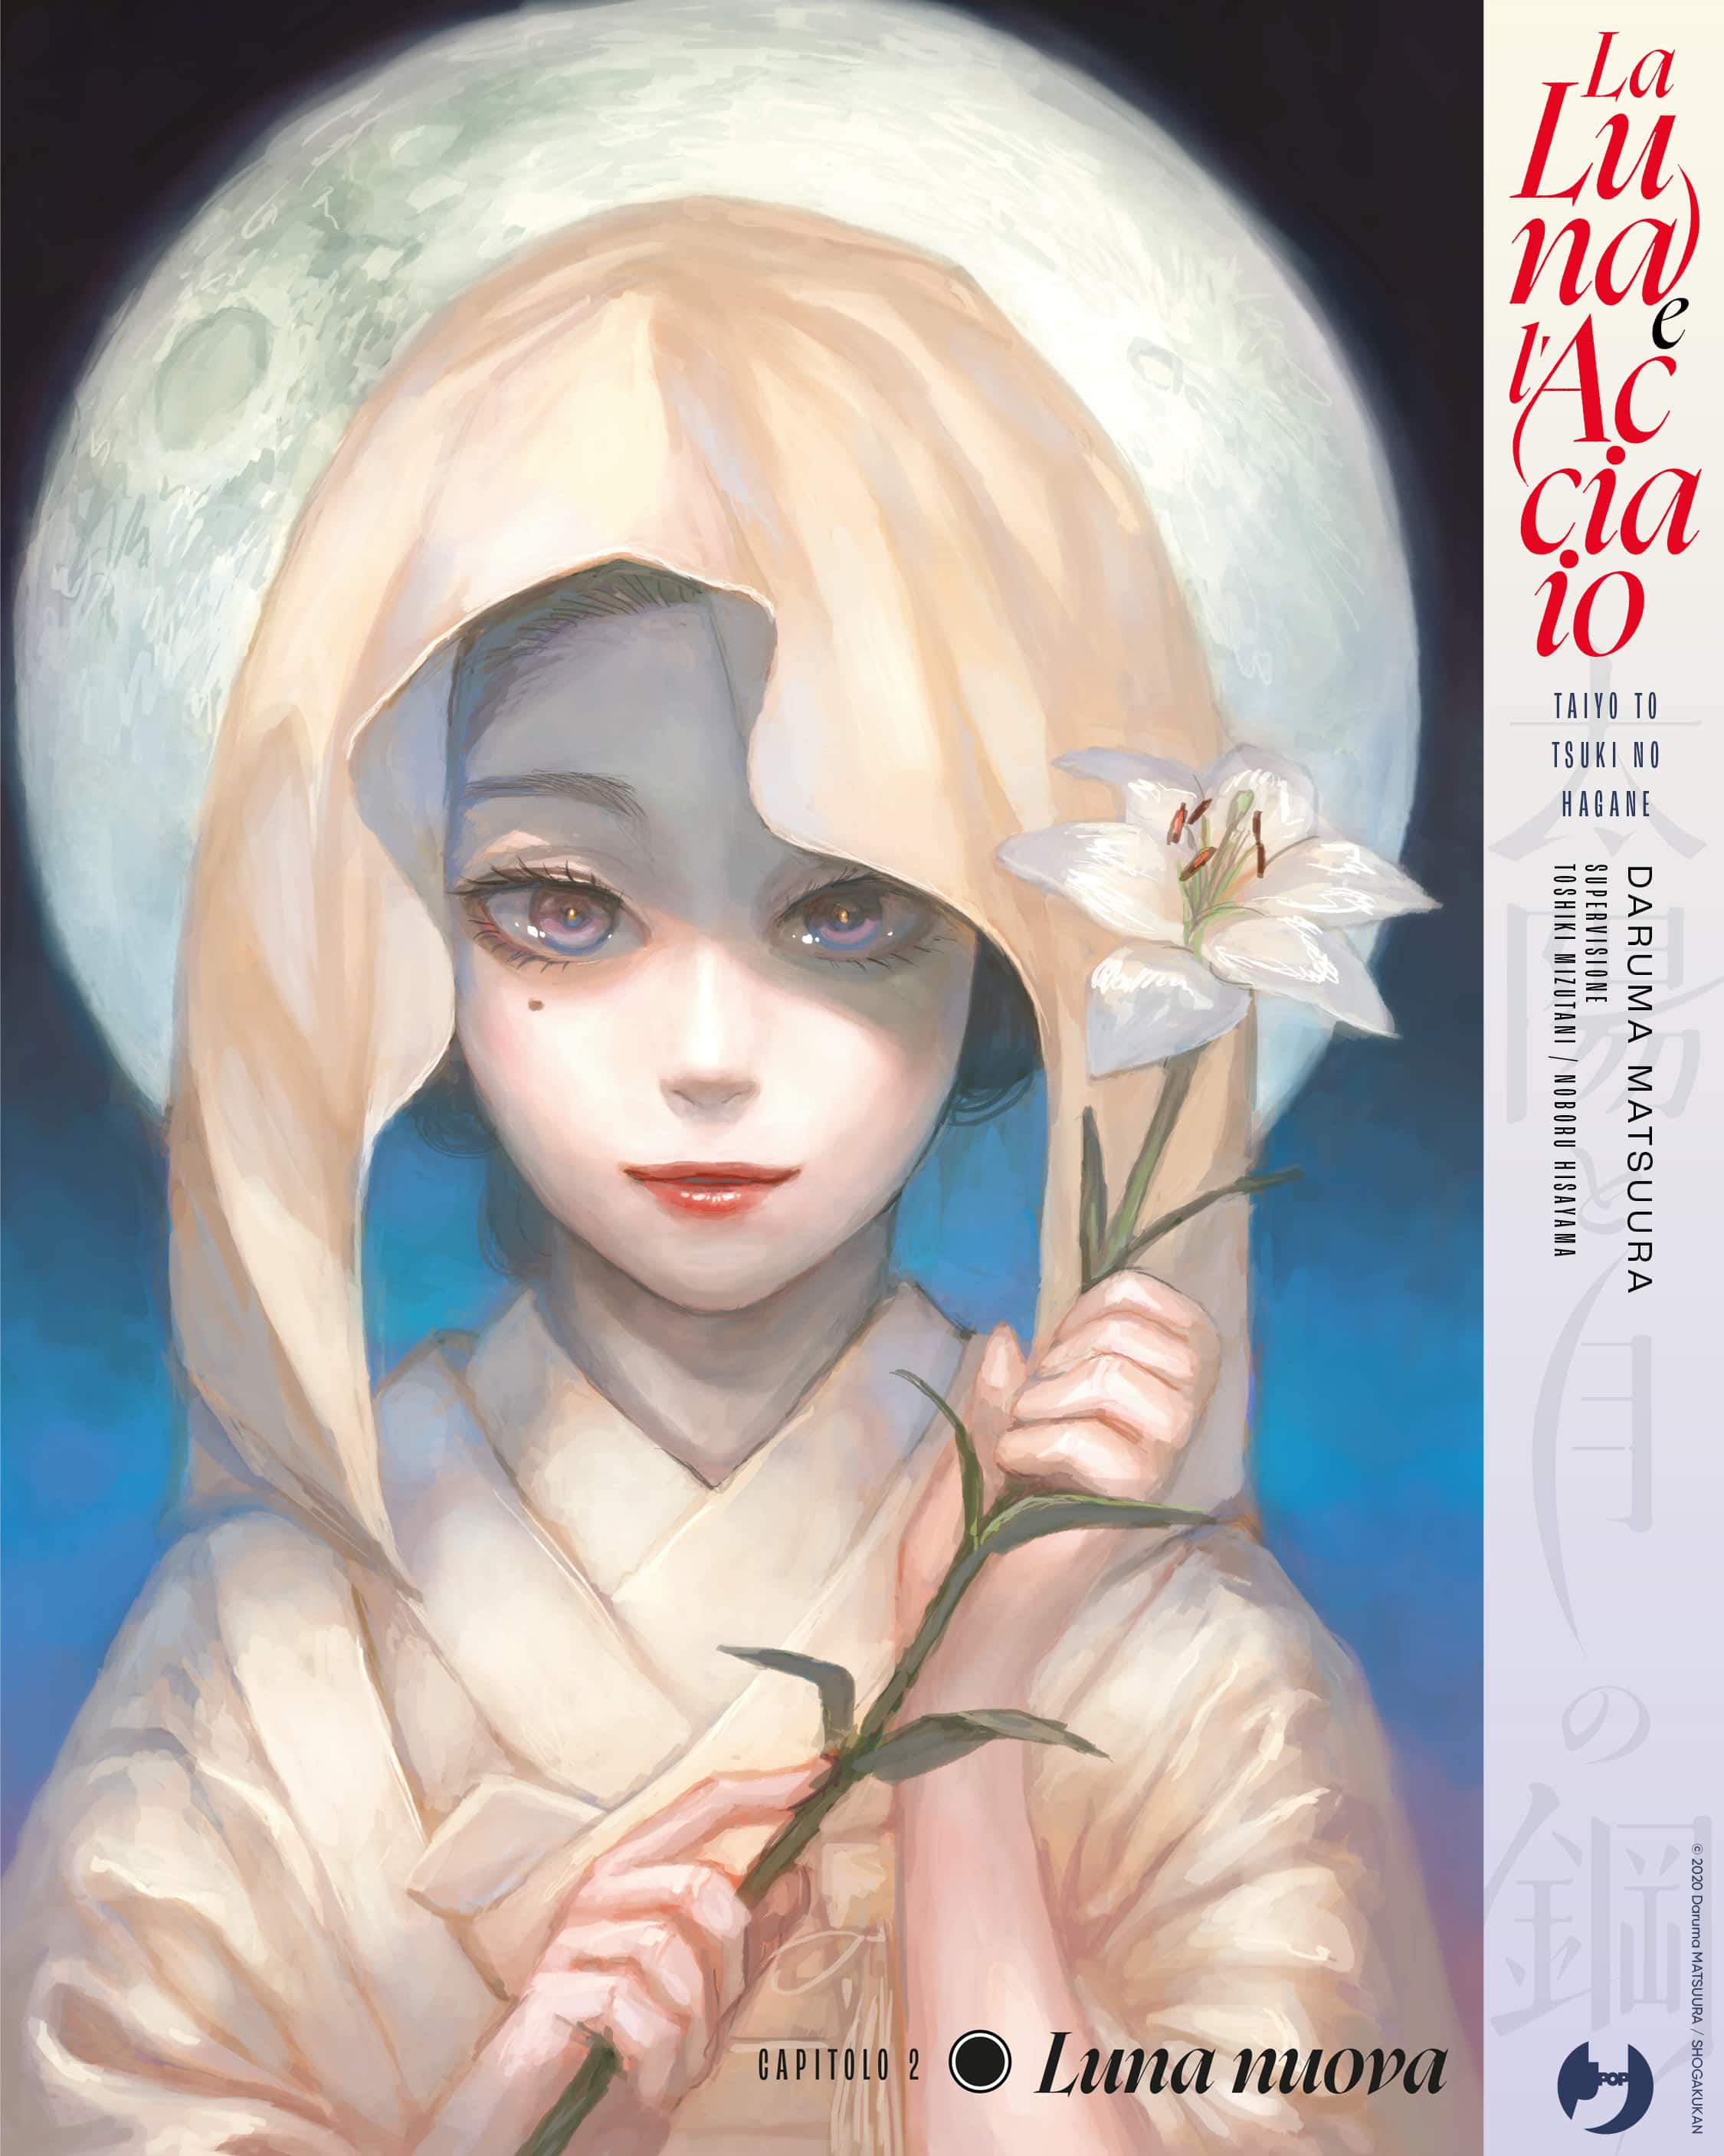 Daruma Matsuura, La luna e l'acciaio, J-POP, 6,90 a volume